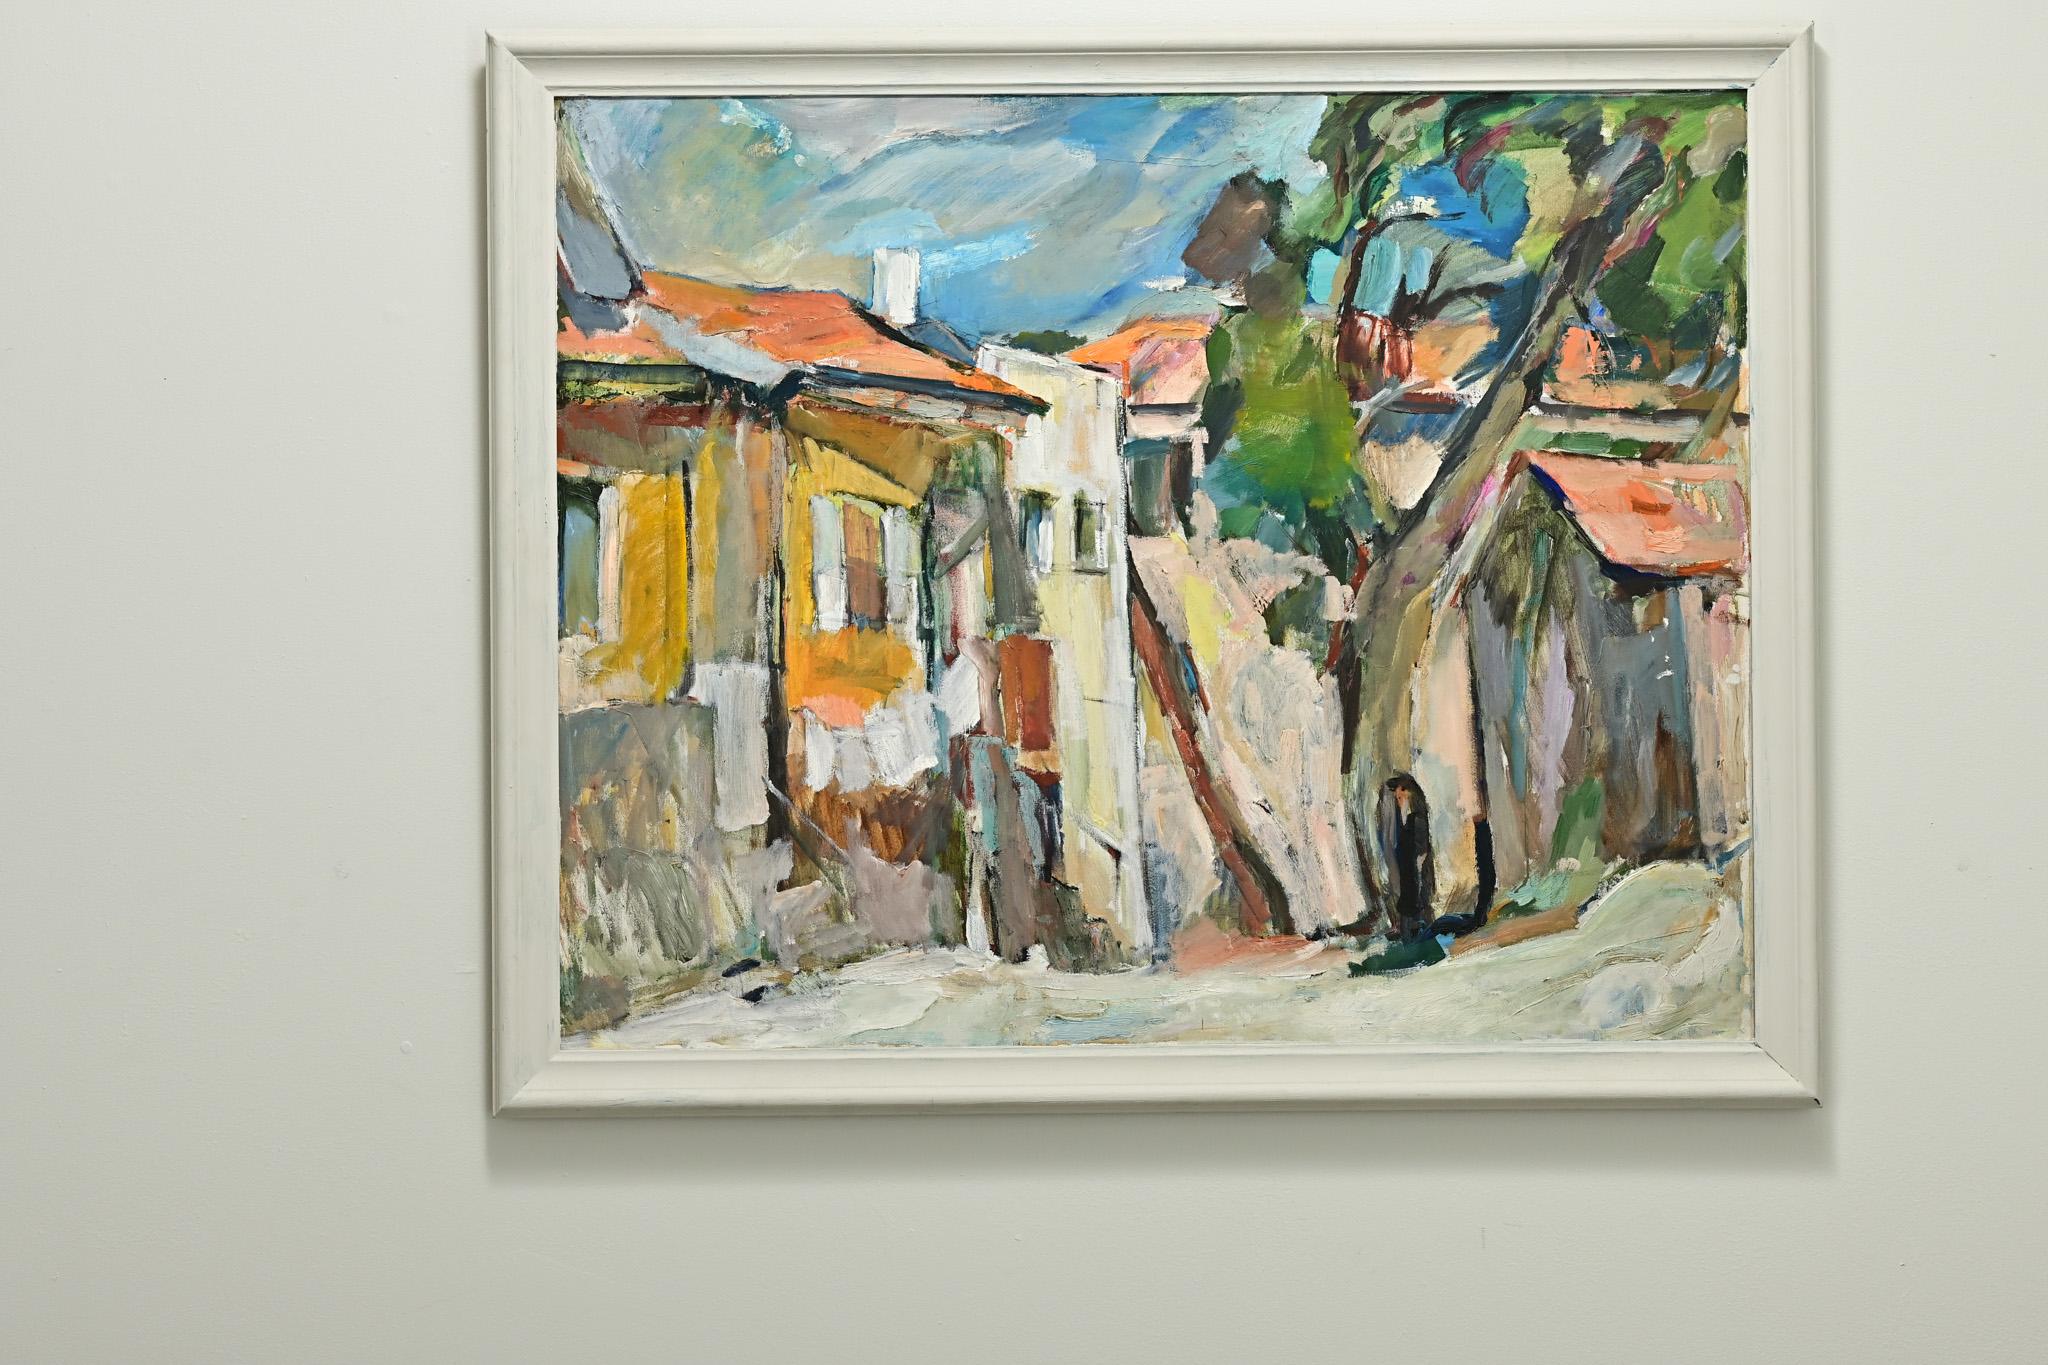 Une peinture abstraite colorée d'Anna Khodorovsky Lipkind, une artiste juive de Mea Shearim, à Jérusalem. Cette peinture moderne est une huile sur toile encadrée dans un cadre peint en blanc. Assurez-vous de regarder les images détaillées pour voir